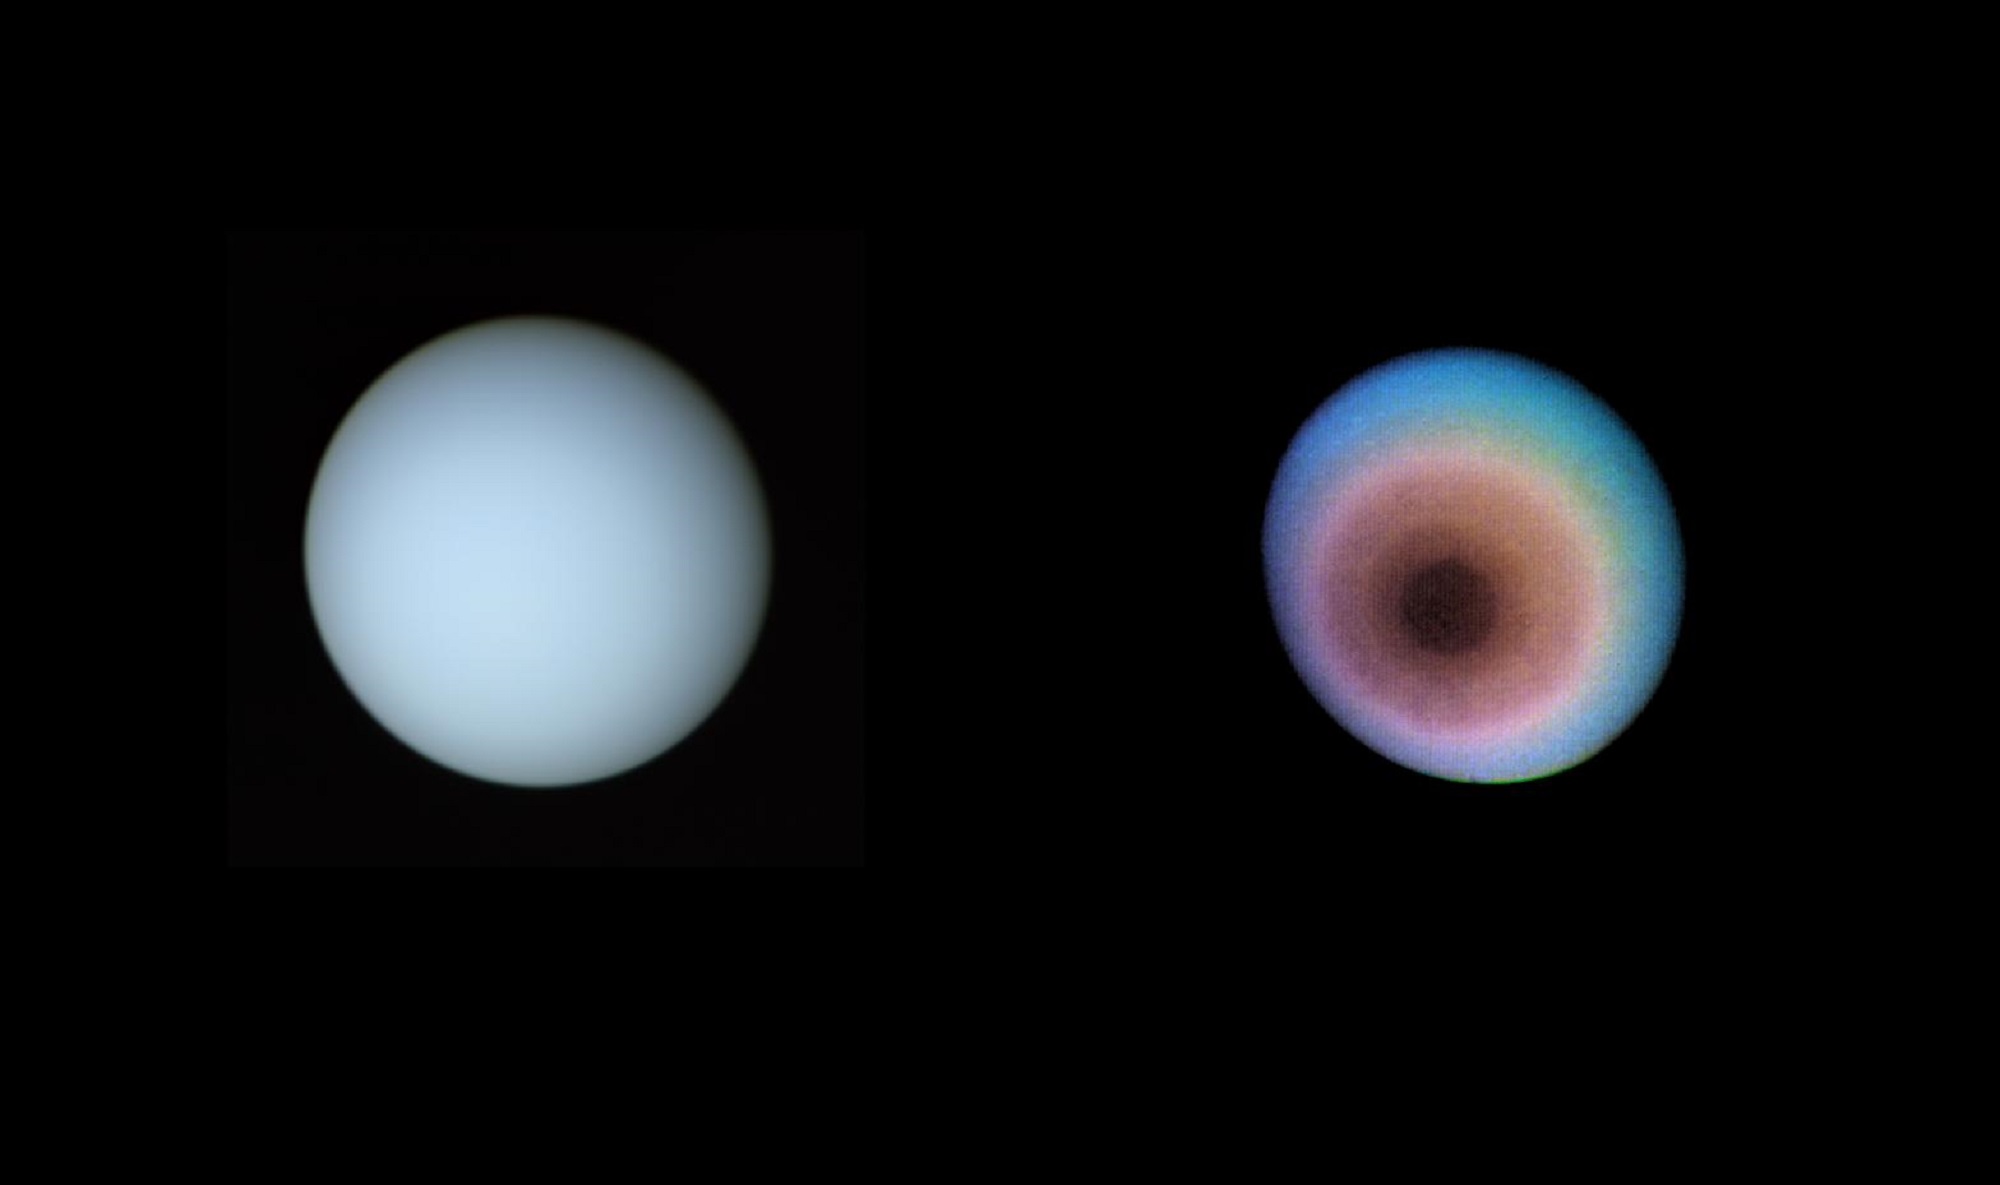 Uranus captured by Voyager 2 in true color and false color. Uranus got its name from Greek mythology.